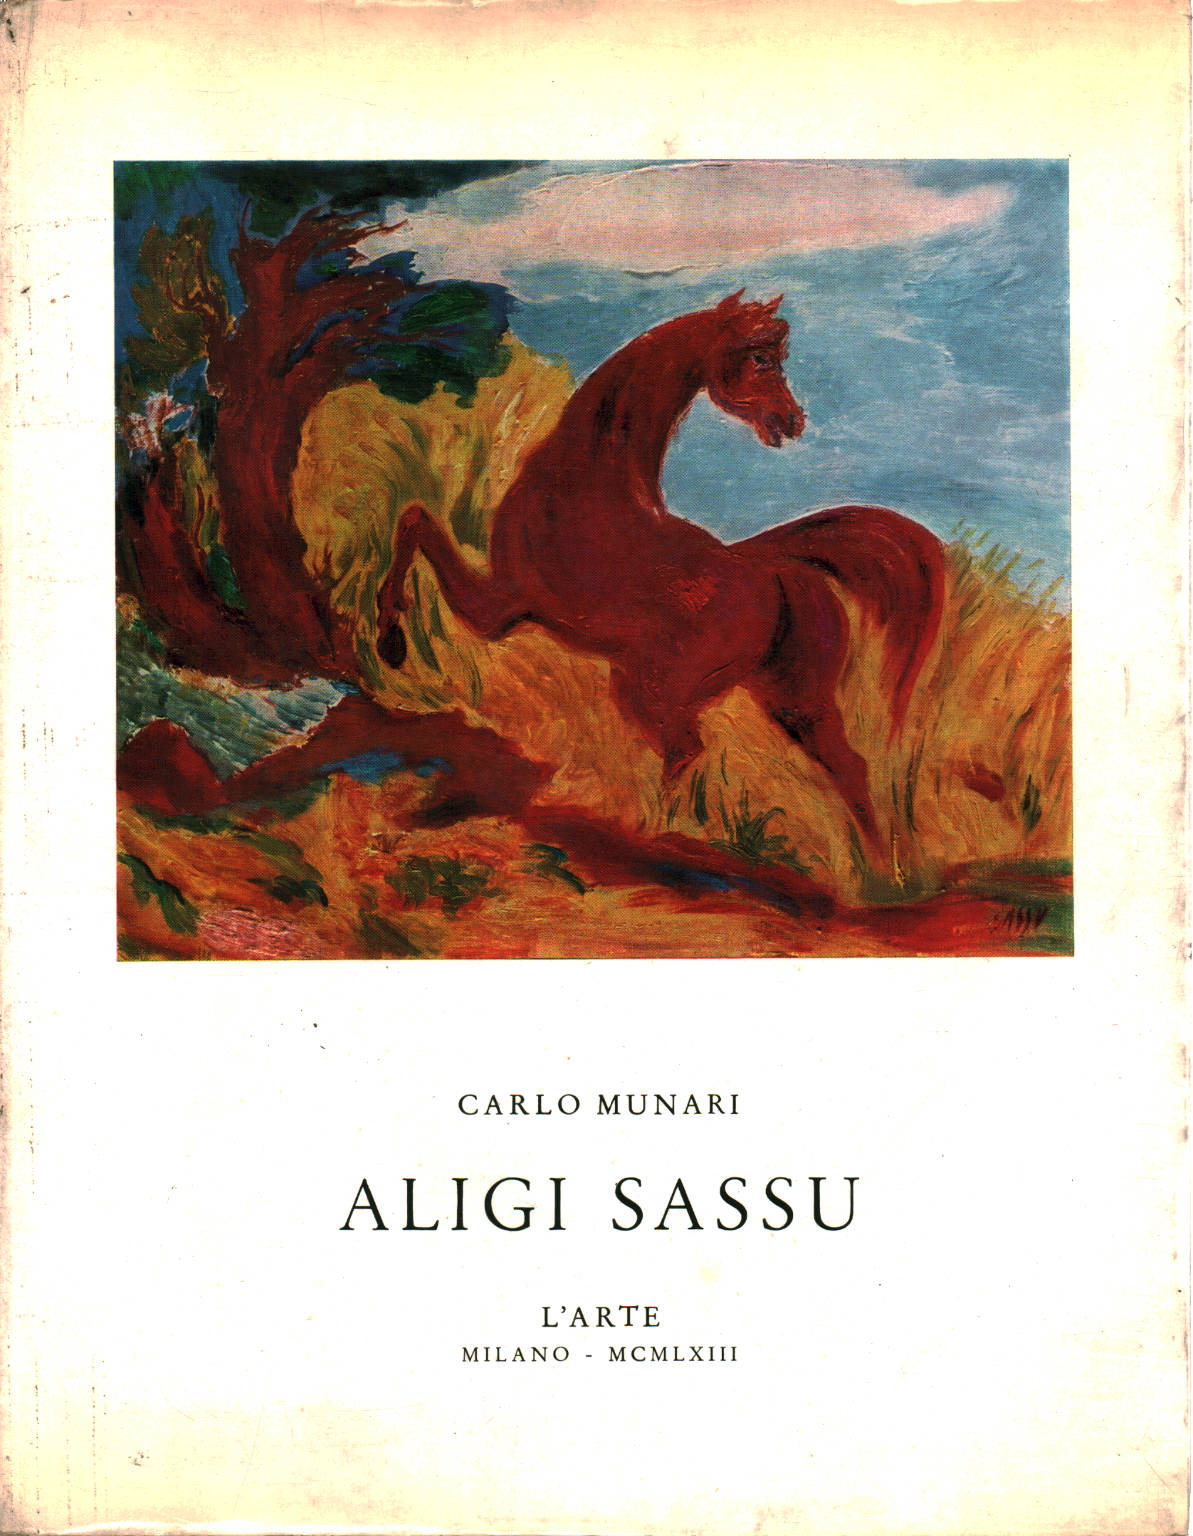 Aligi Sassu, Carlo Munari